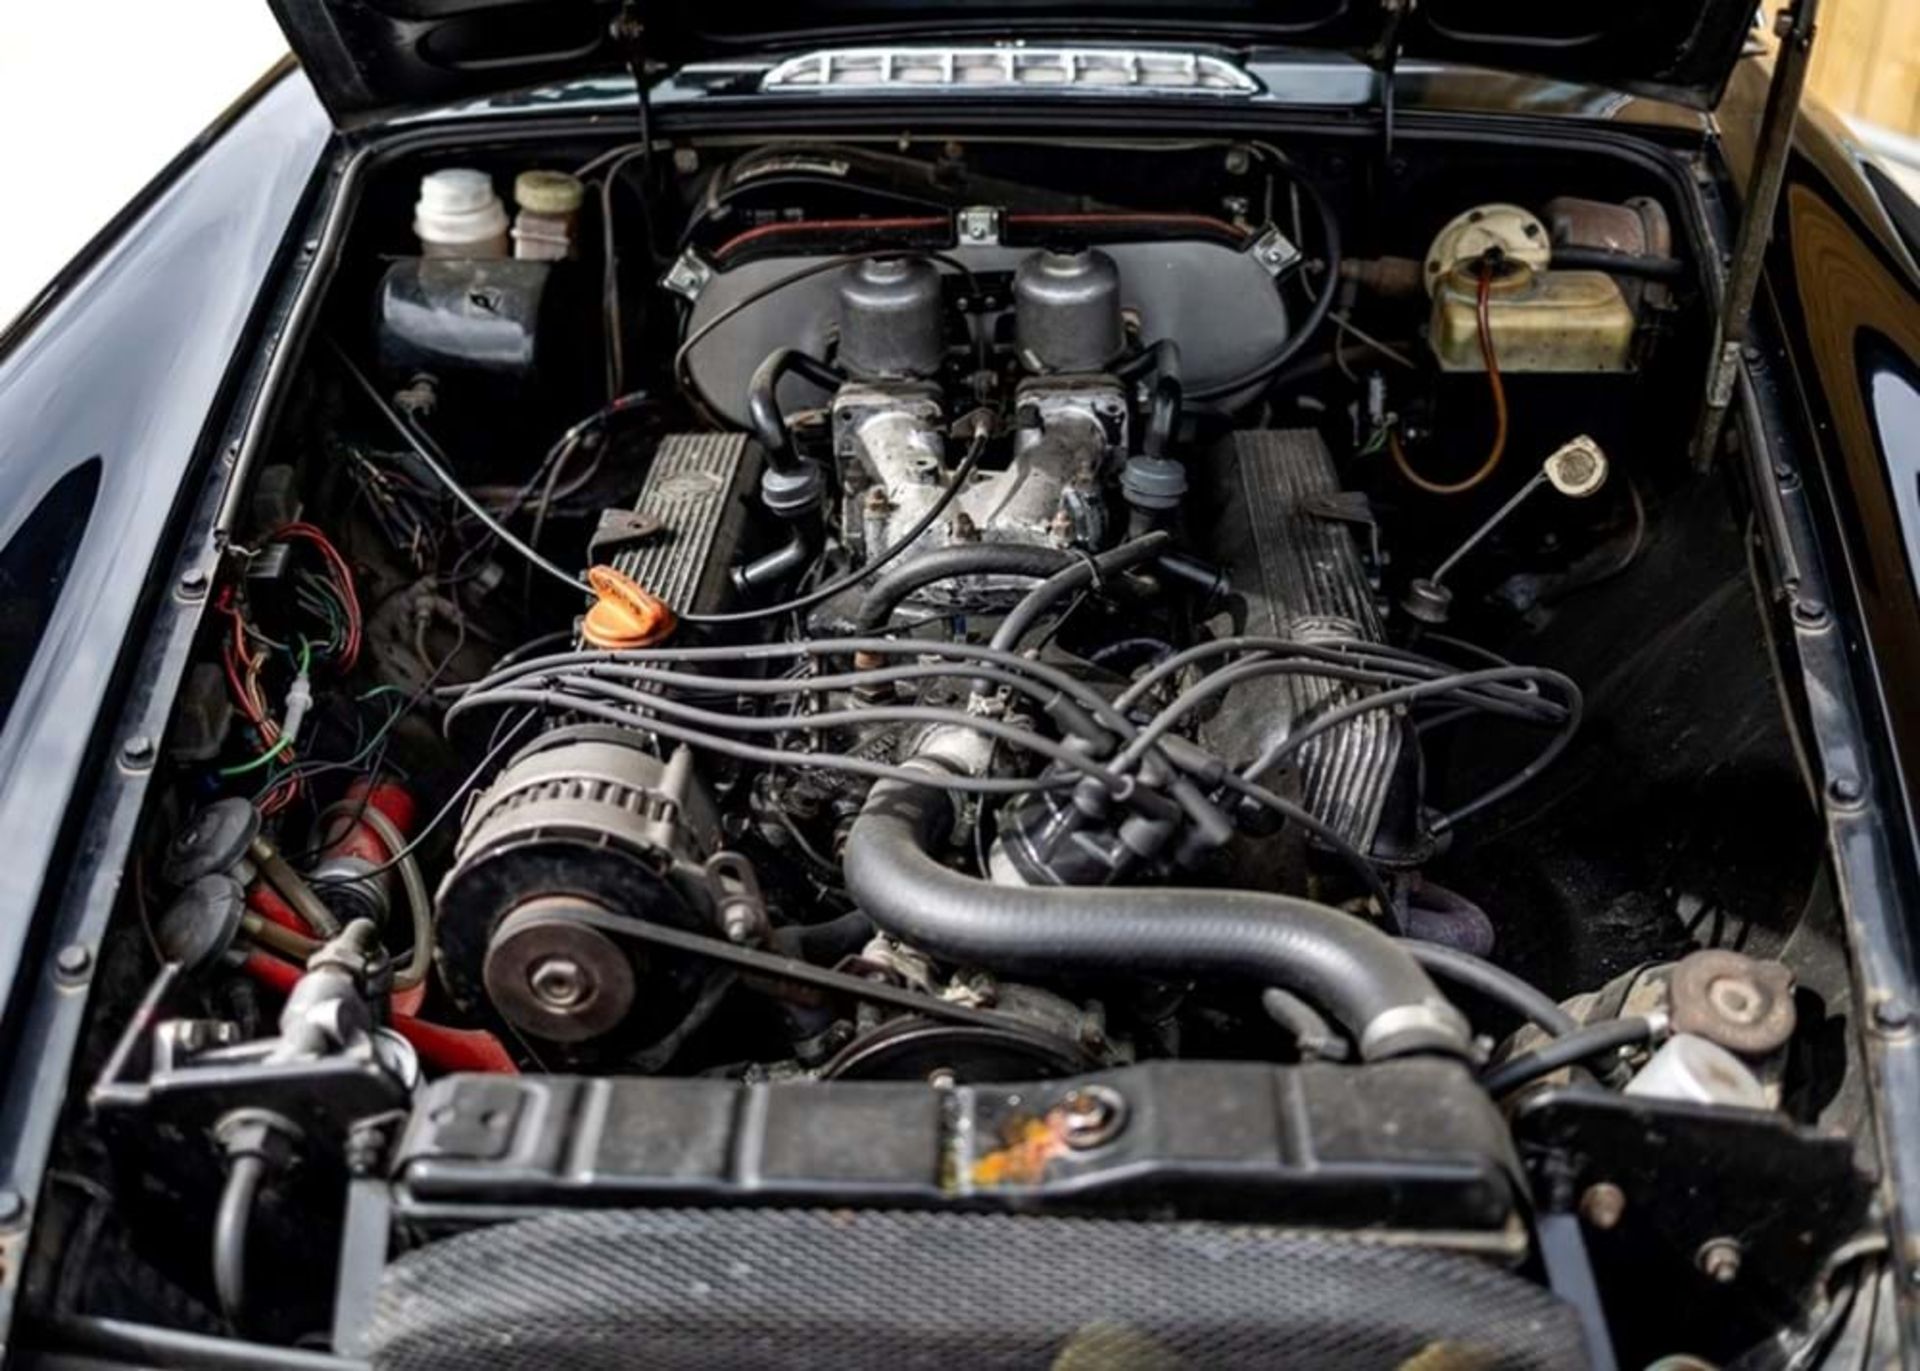 1973 MG B GT V8 - Image 5 of 10